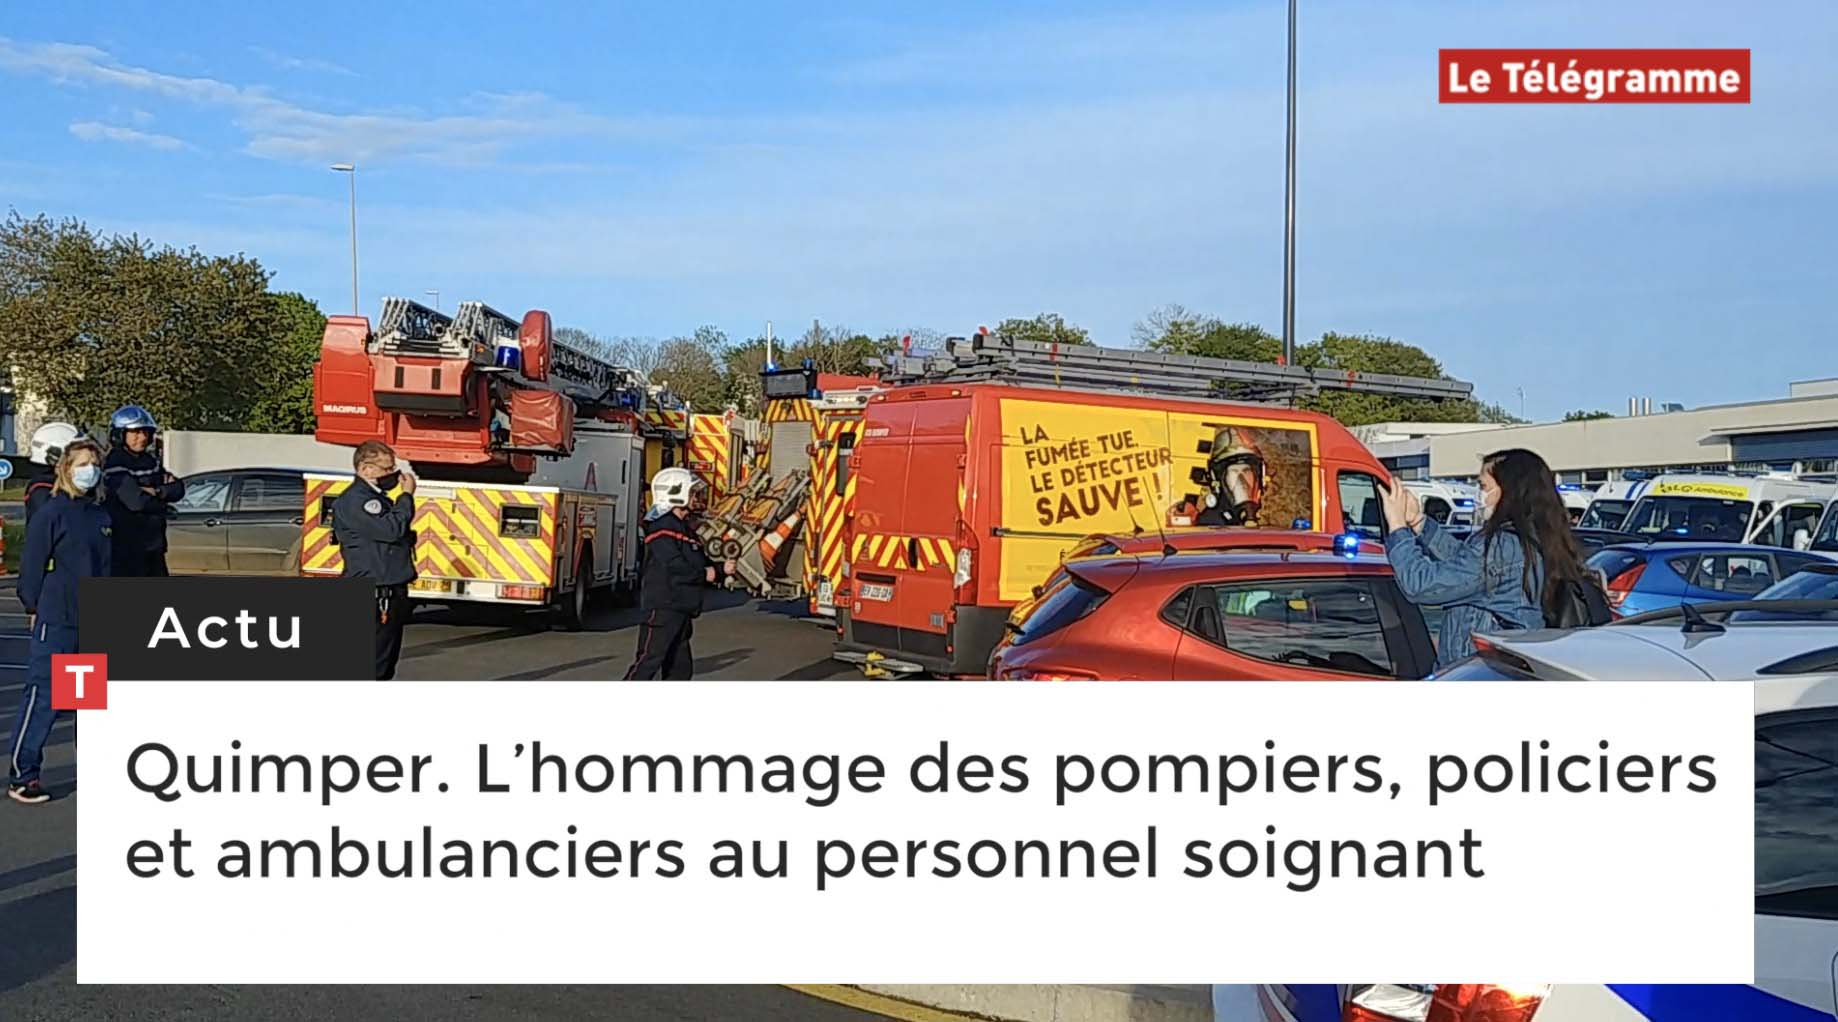 Quimper. L’hommage des pompiers, policiers et ambulanciers au personnel soignant (Le Télégramme)